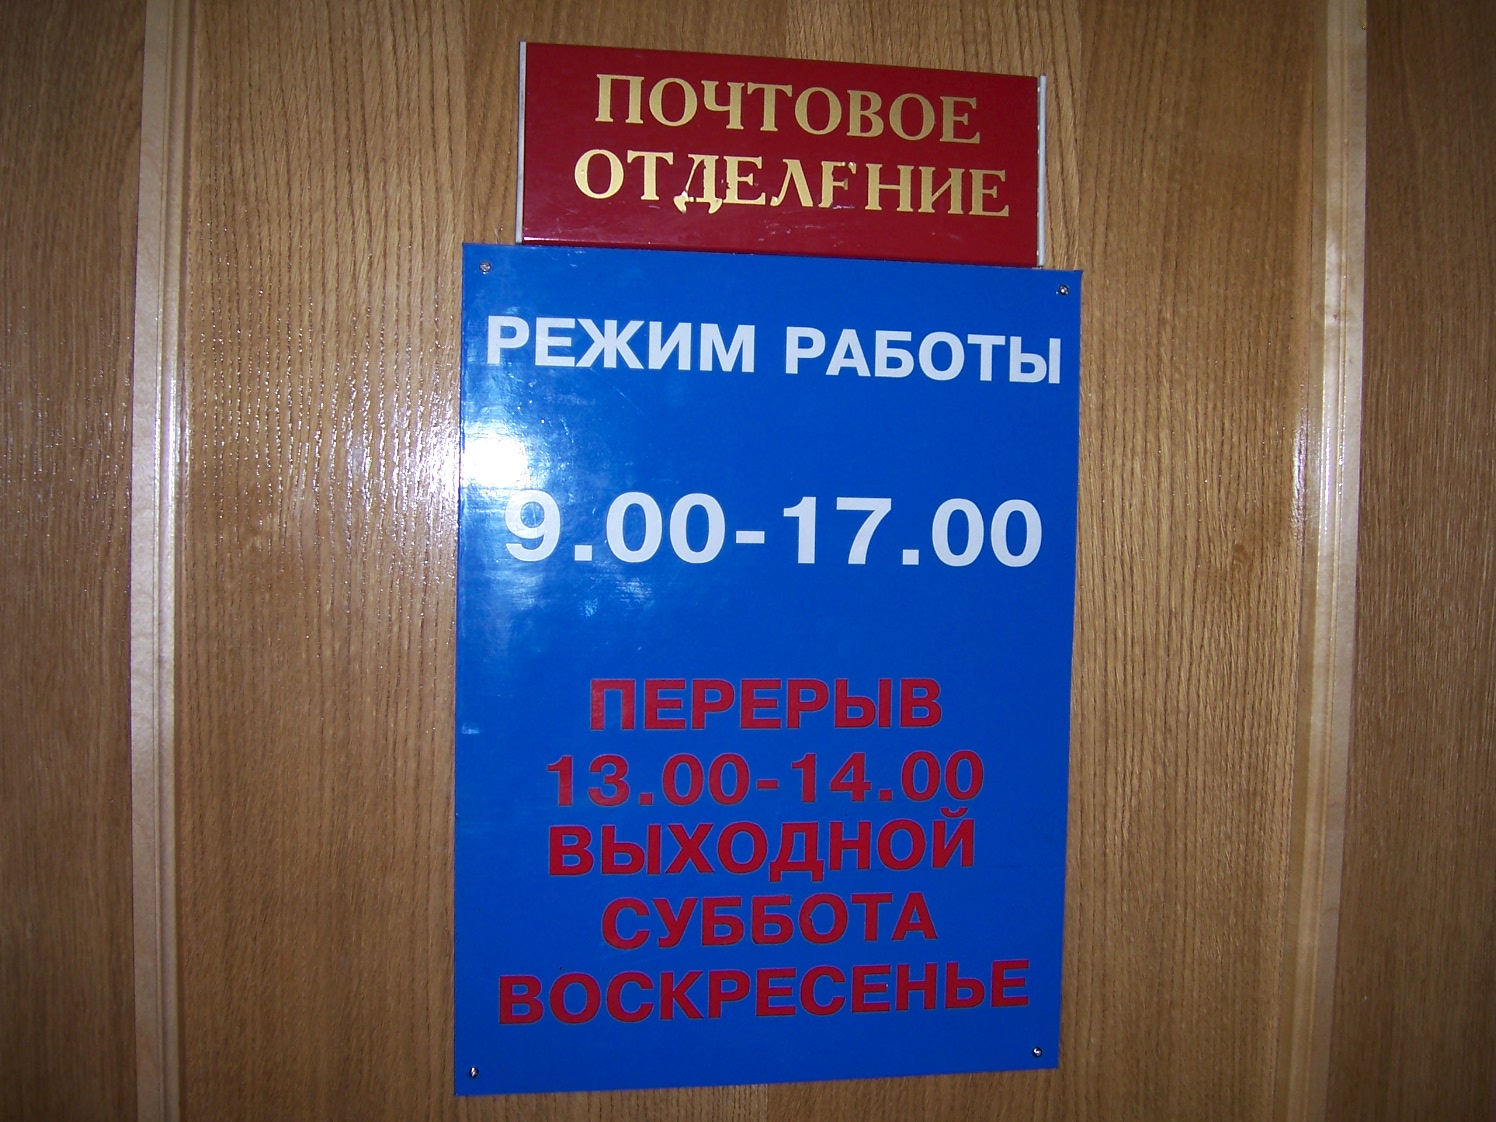 ВХОД, отделение почтовой связи 672021, Забайкальский край, Чита